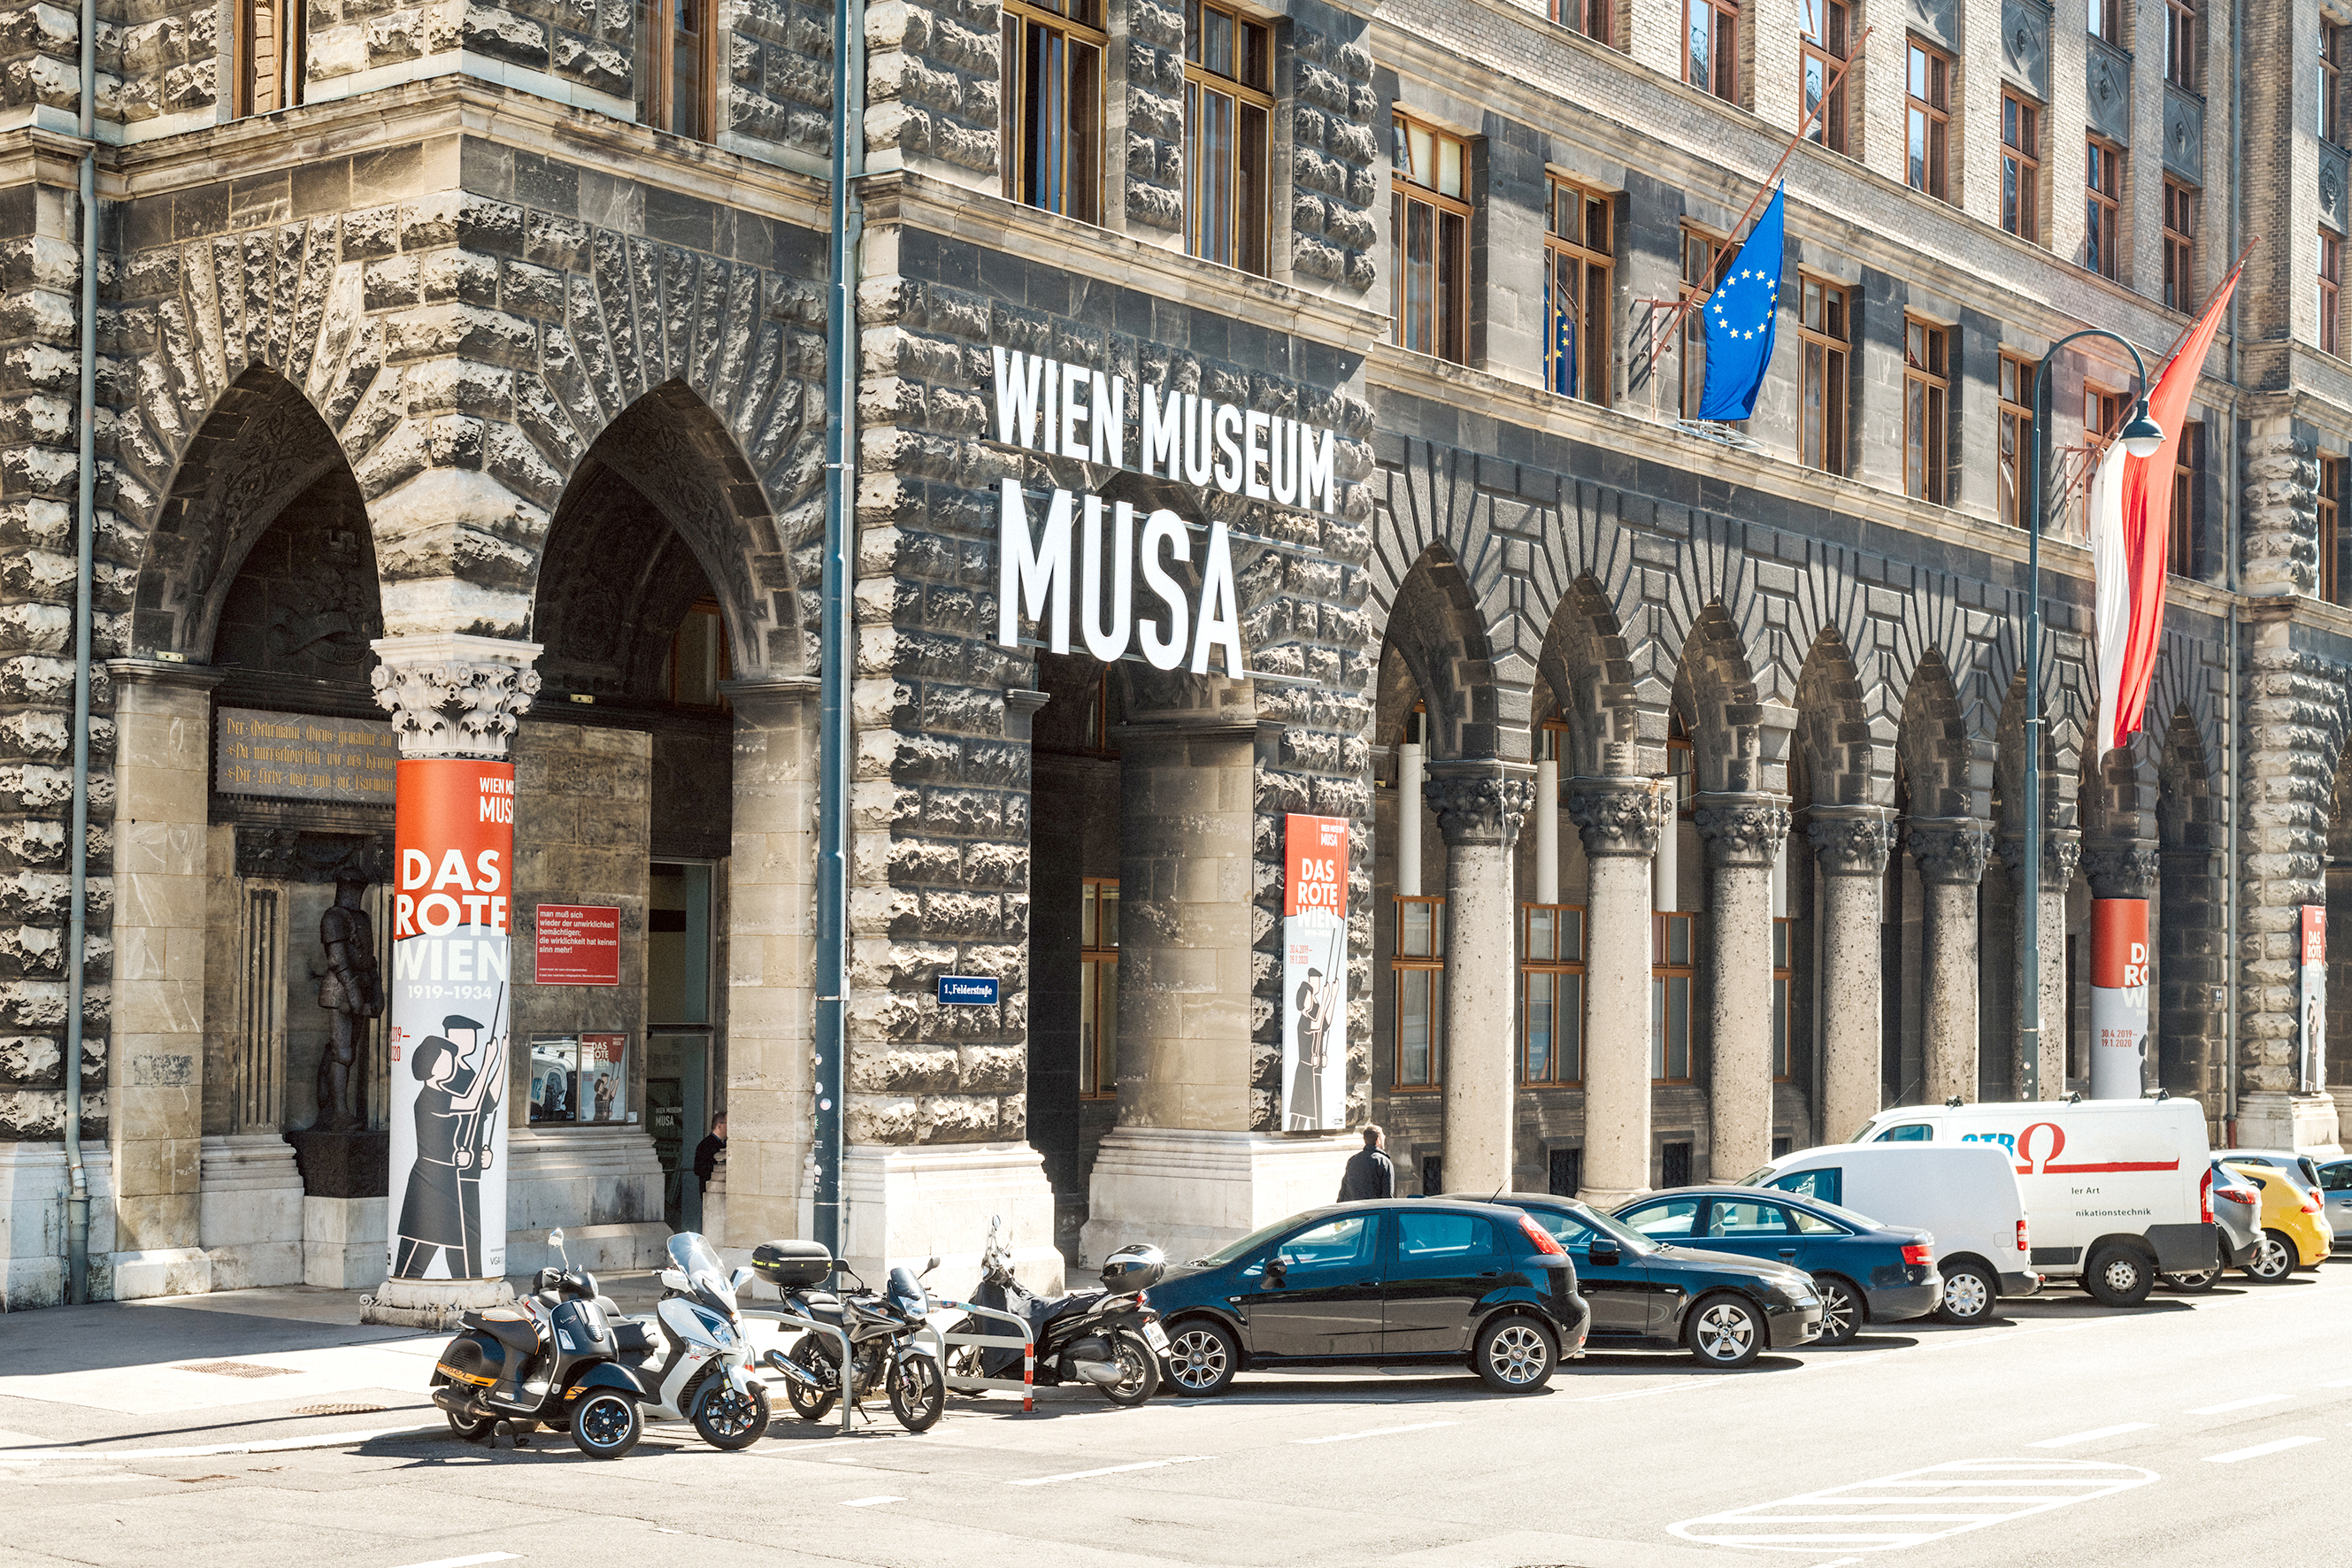 Foto der Fassade des Wien Museums MUSA und mehrerer davor geparkter Fahrzeuge.